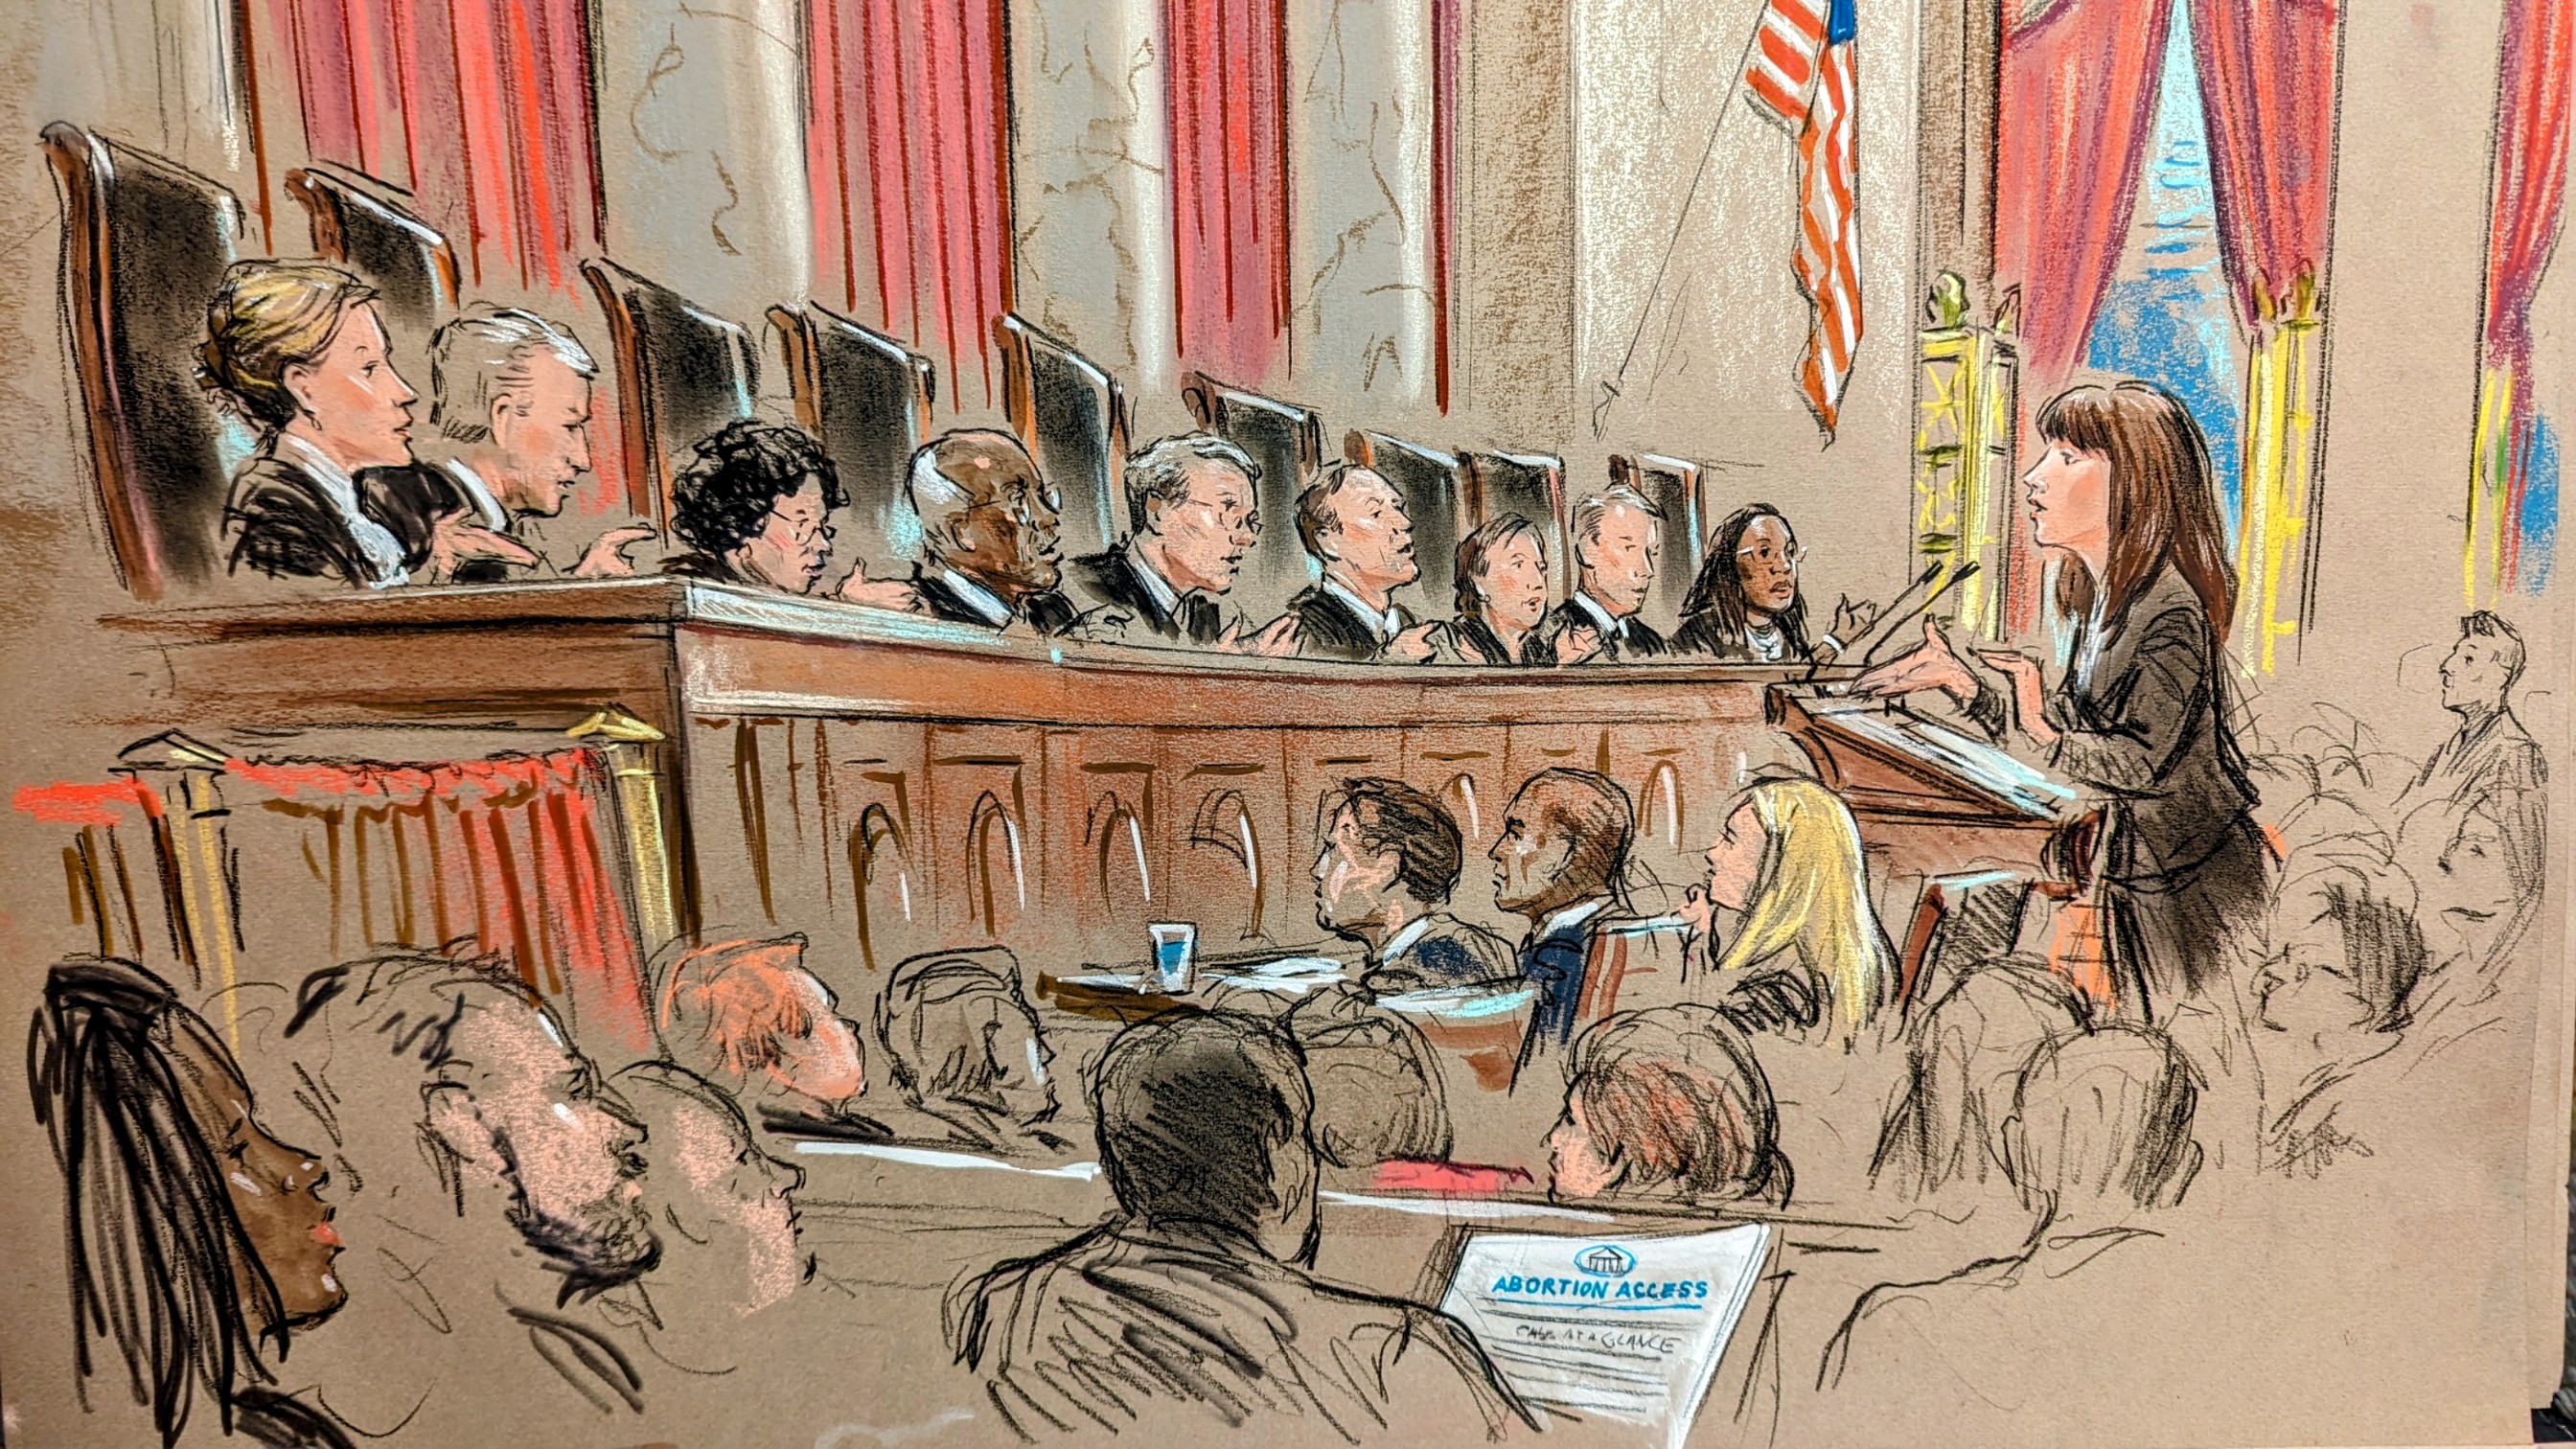 Elizabeth Prelogar, US solicitor general, argues before the US Supreme Court.